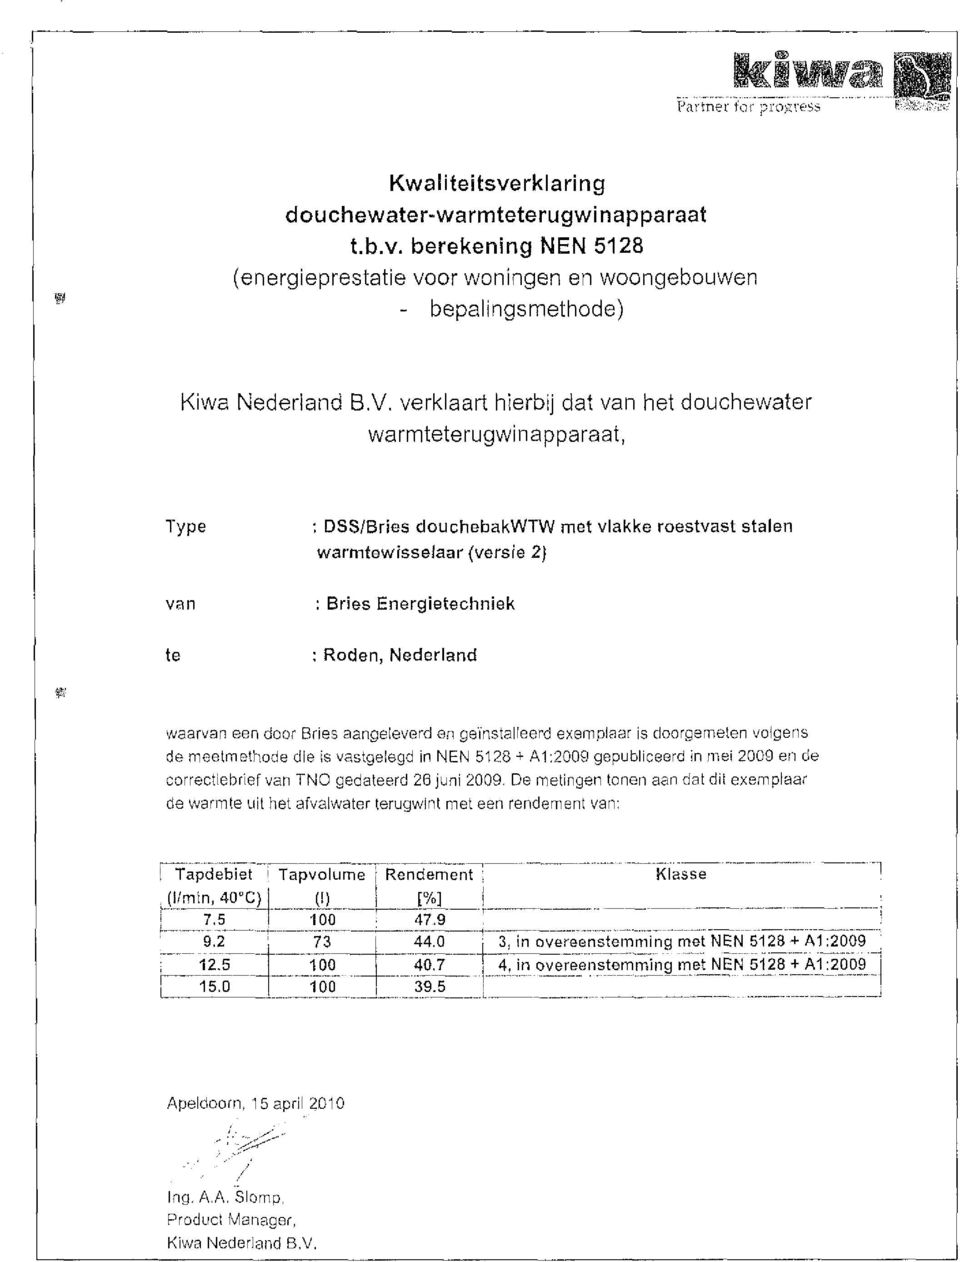 Nederland waarvan eendoor Bries aangeleverd en geïnstalleerd exemplaar isdoorgemeten volgens demeetmethode die isvastgelegd innen 5128 + A1:29 gepubliceerd in mei 29ende correctiebrief van TNO